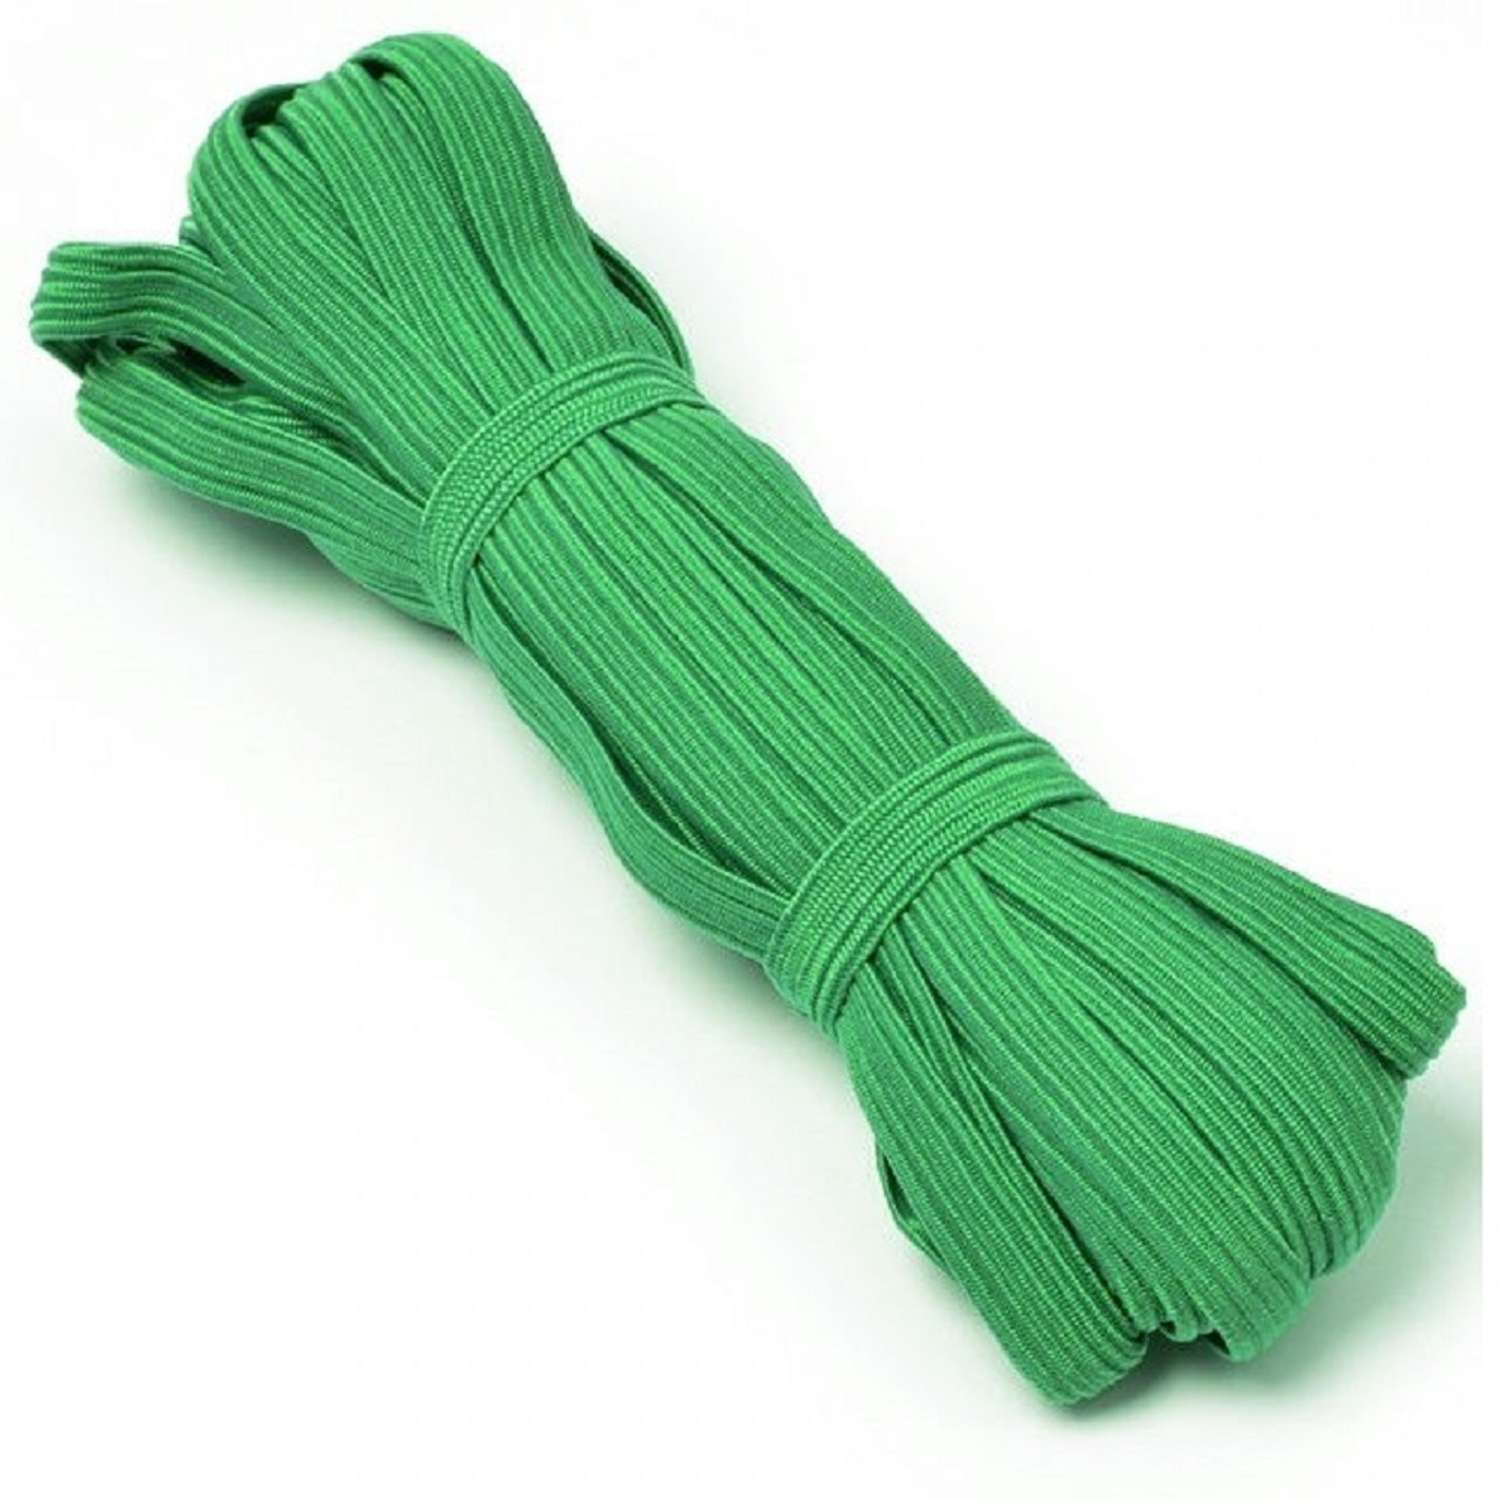 Резинка продержка MarEL бельевая зеленая 10 мм длина 10 метров - фото 1